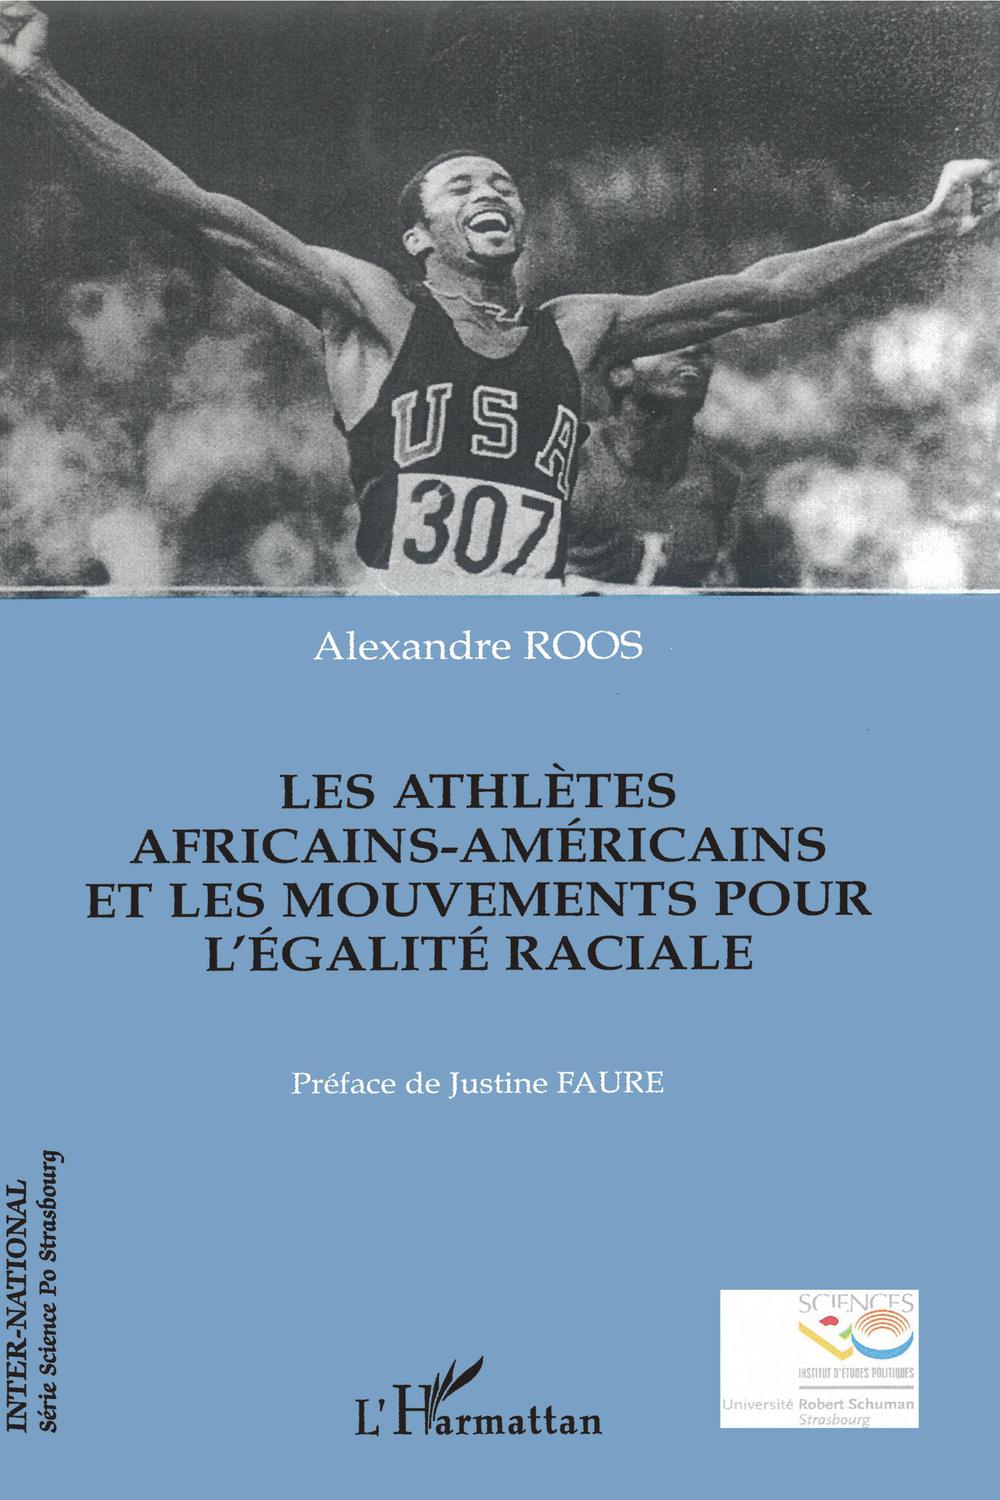 Les athlètes africains-américains et les mouvements pour l'égalité raciale - Alexandre Roos